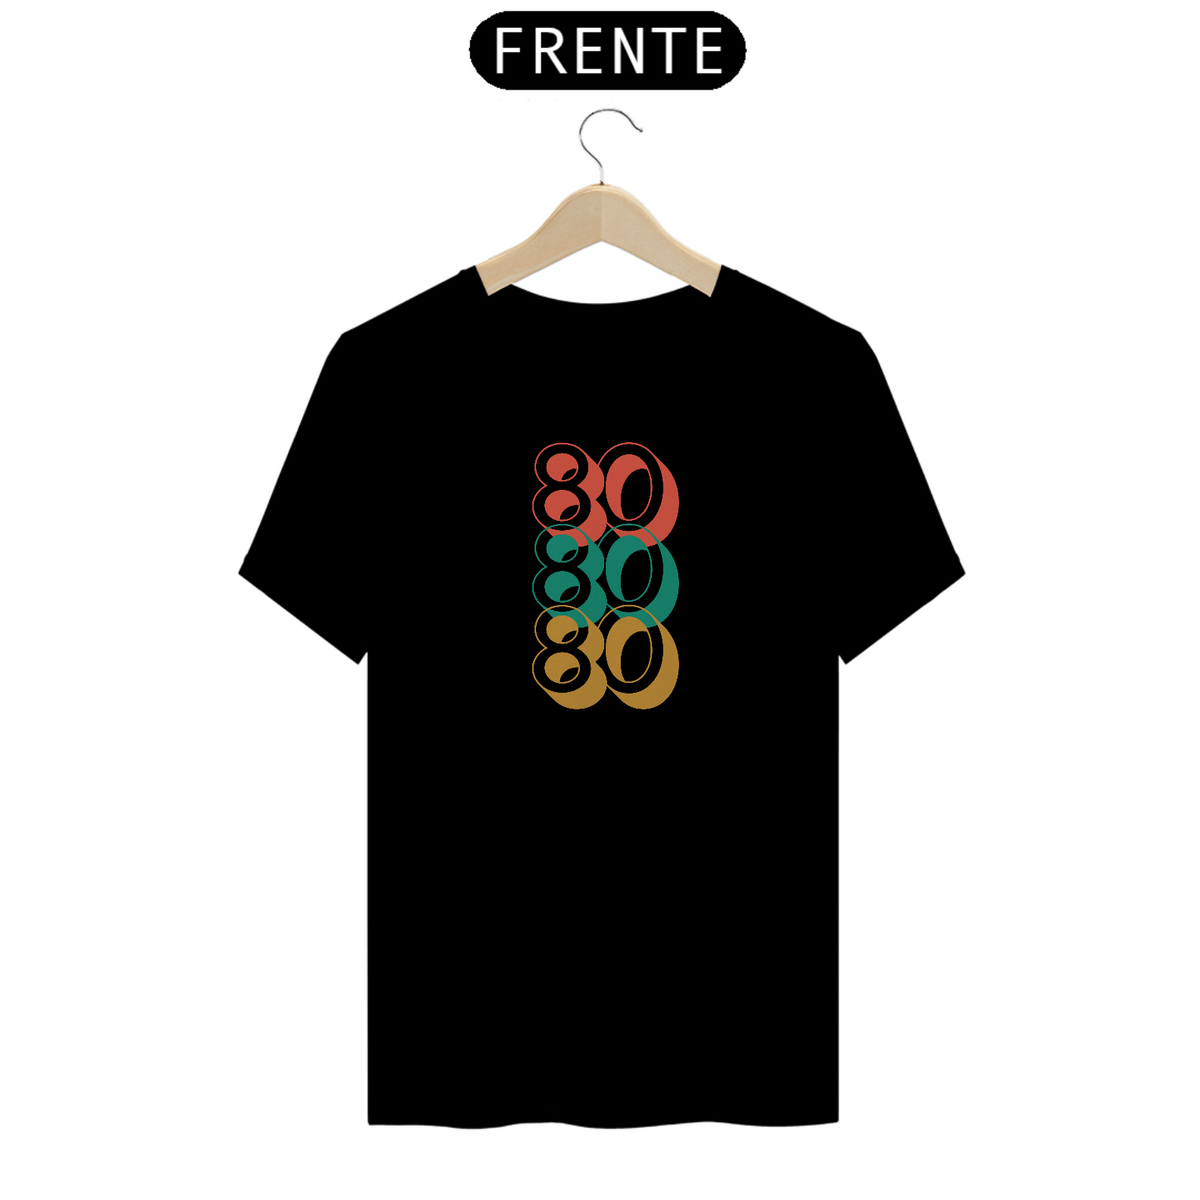 Nome do produto: Camiseta 80 80 80